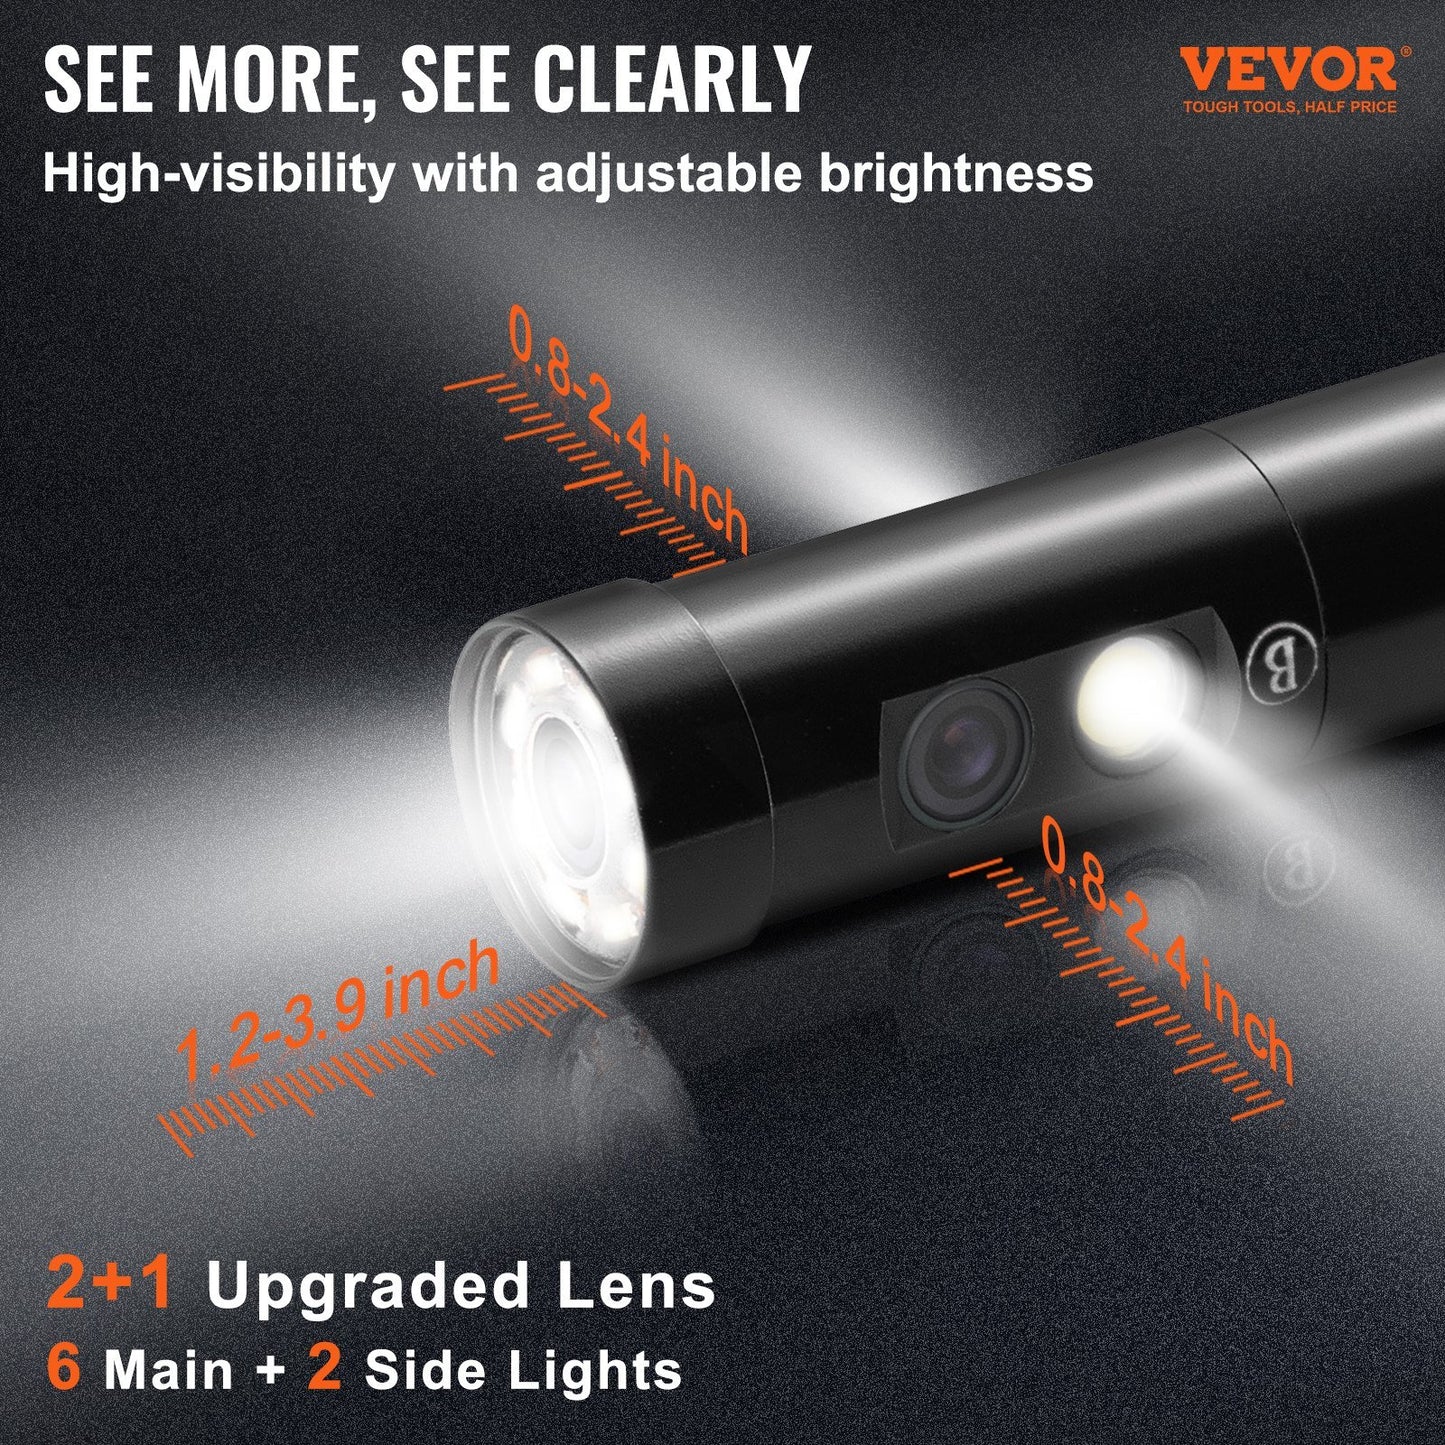 VEVOR Endoscope Camera Borescope Inspection Camera Triple Lens 4.5" IPS